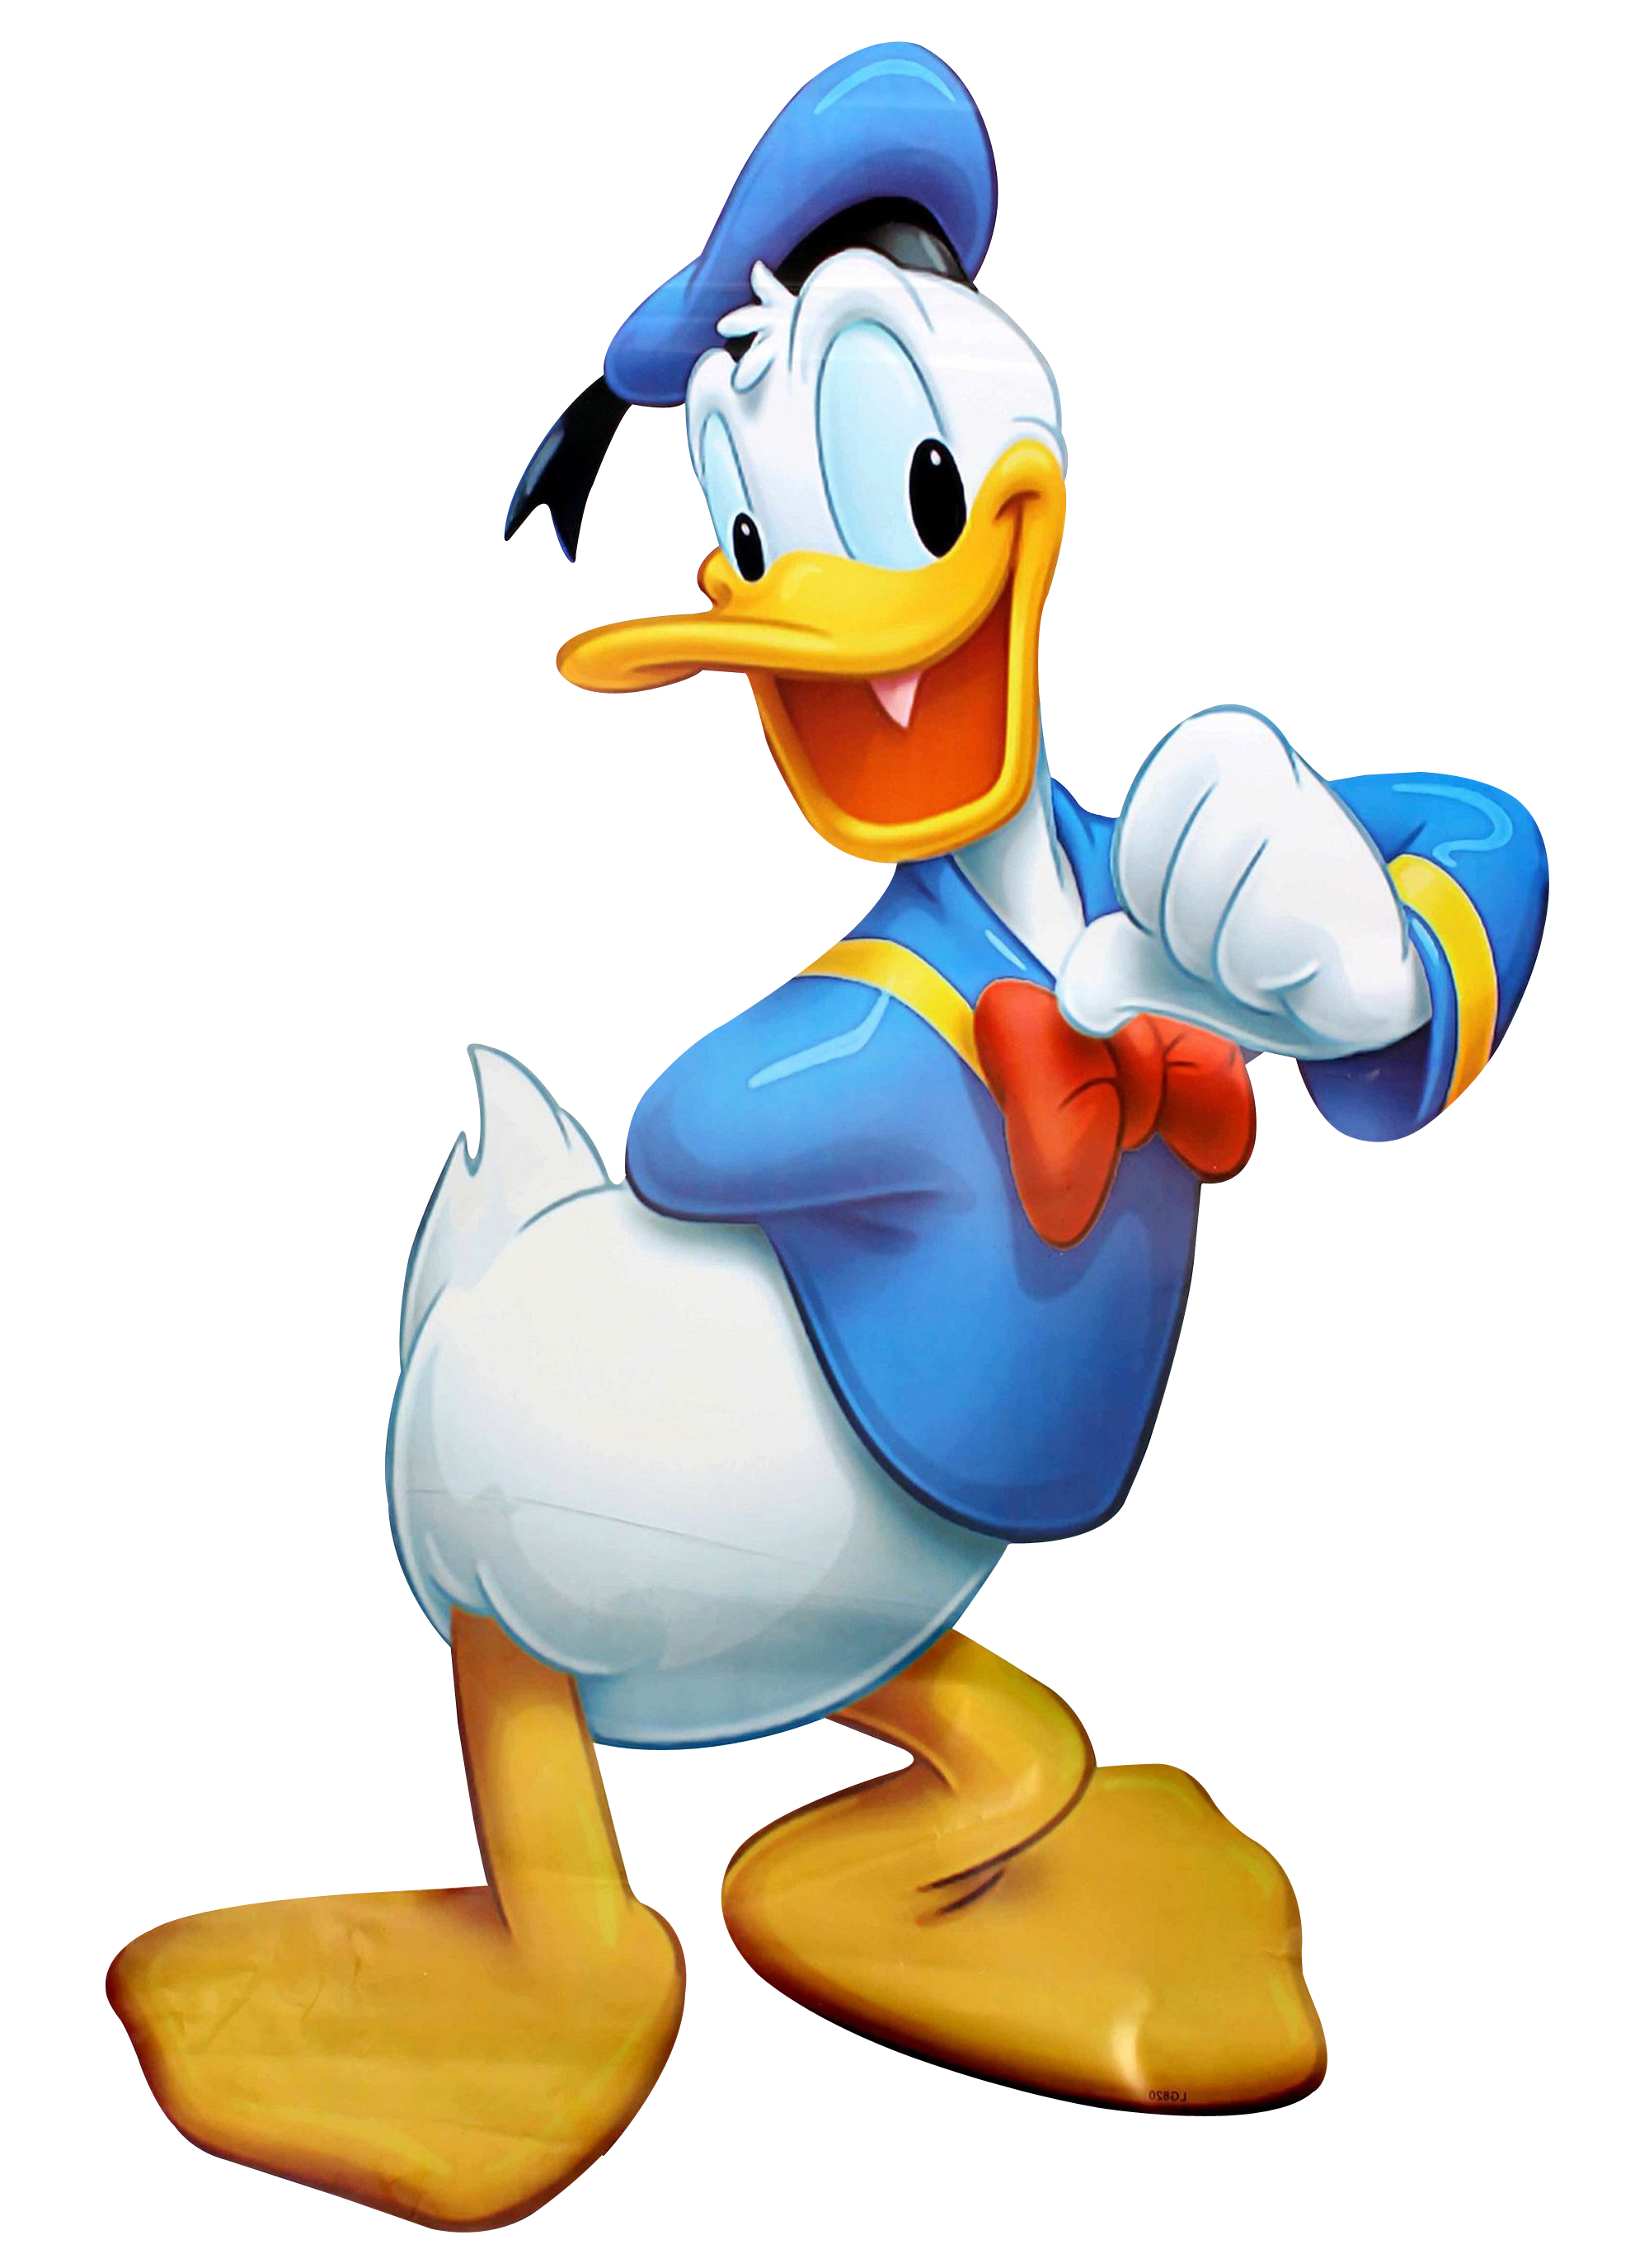 Donald Duck PNG Images, Baby Donald Duck, Face, Donald Duck Cartoon - Free  Transparent PNG Logos